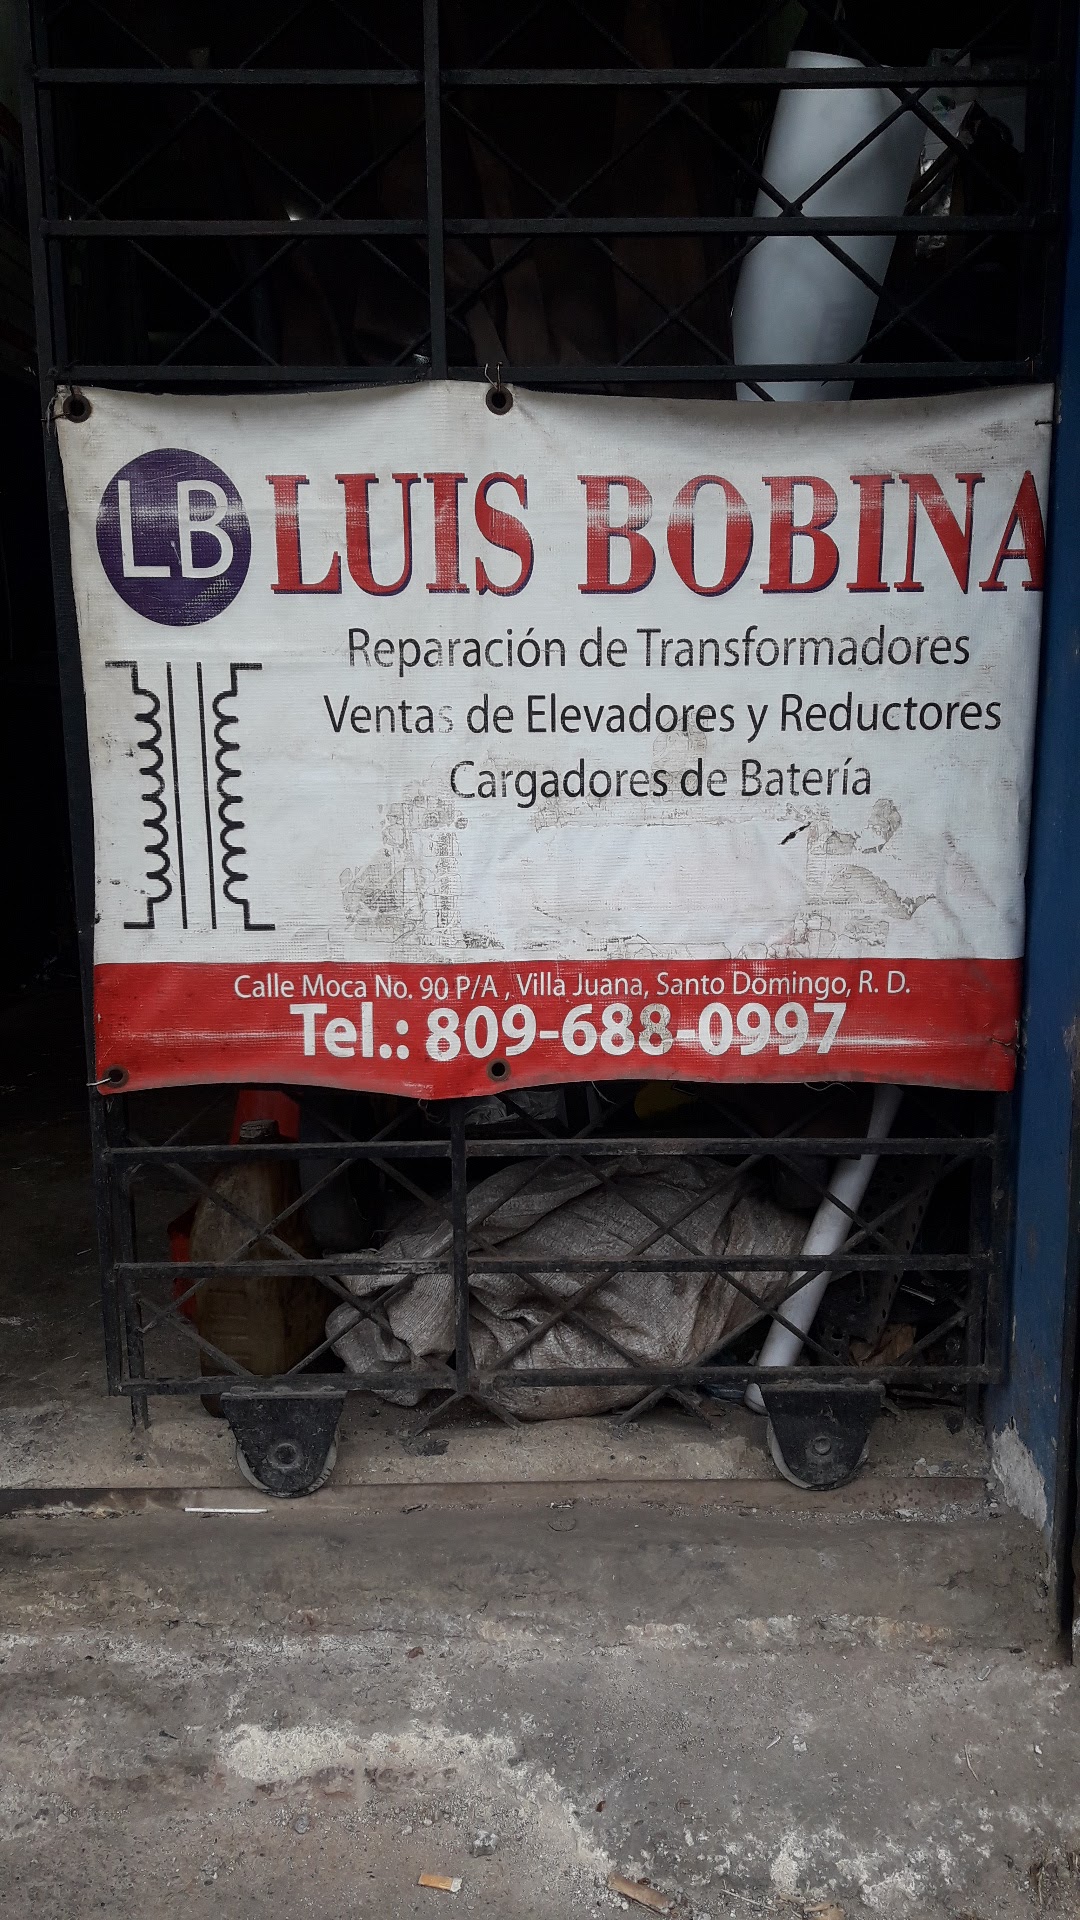 Luis Bobina